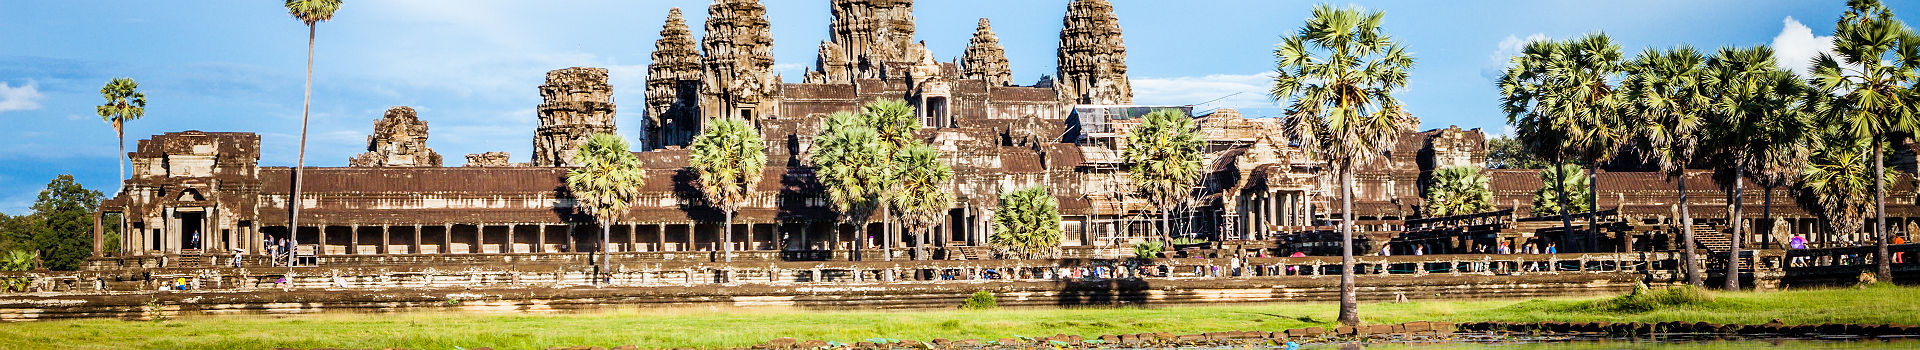 Cambodge - Temple Angkor Wat